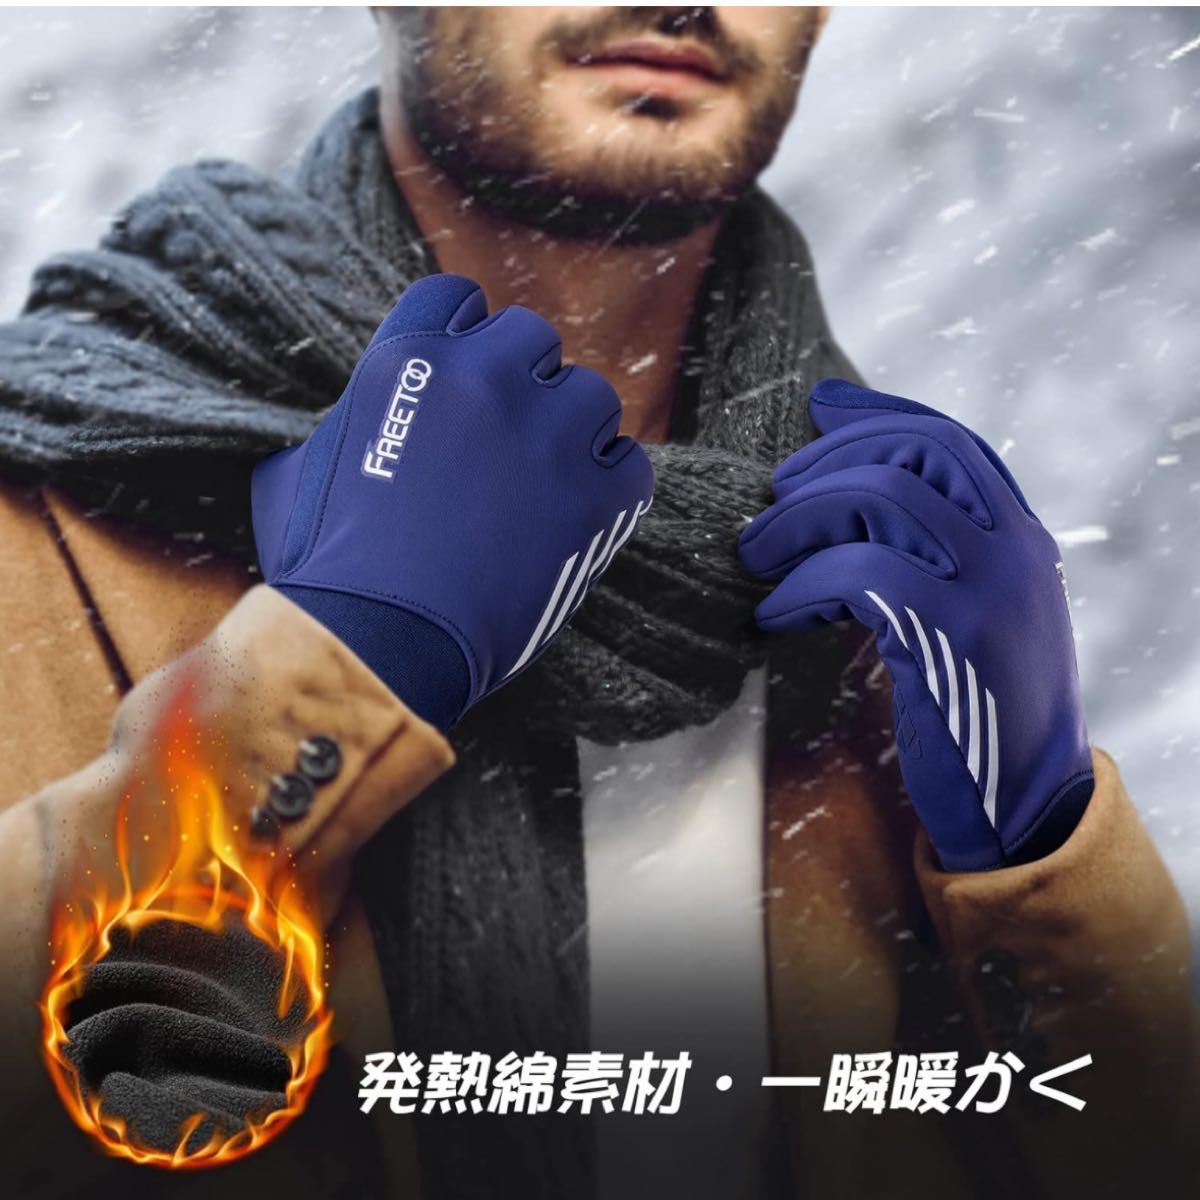 防寒グローブ ランニング 手袋 防寒 滑り止め 暖かいFREETOO 防寒手袋 メンズ 発熱綿素材 一瞬暖かく 保温 撥水加工